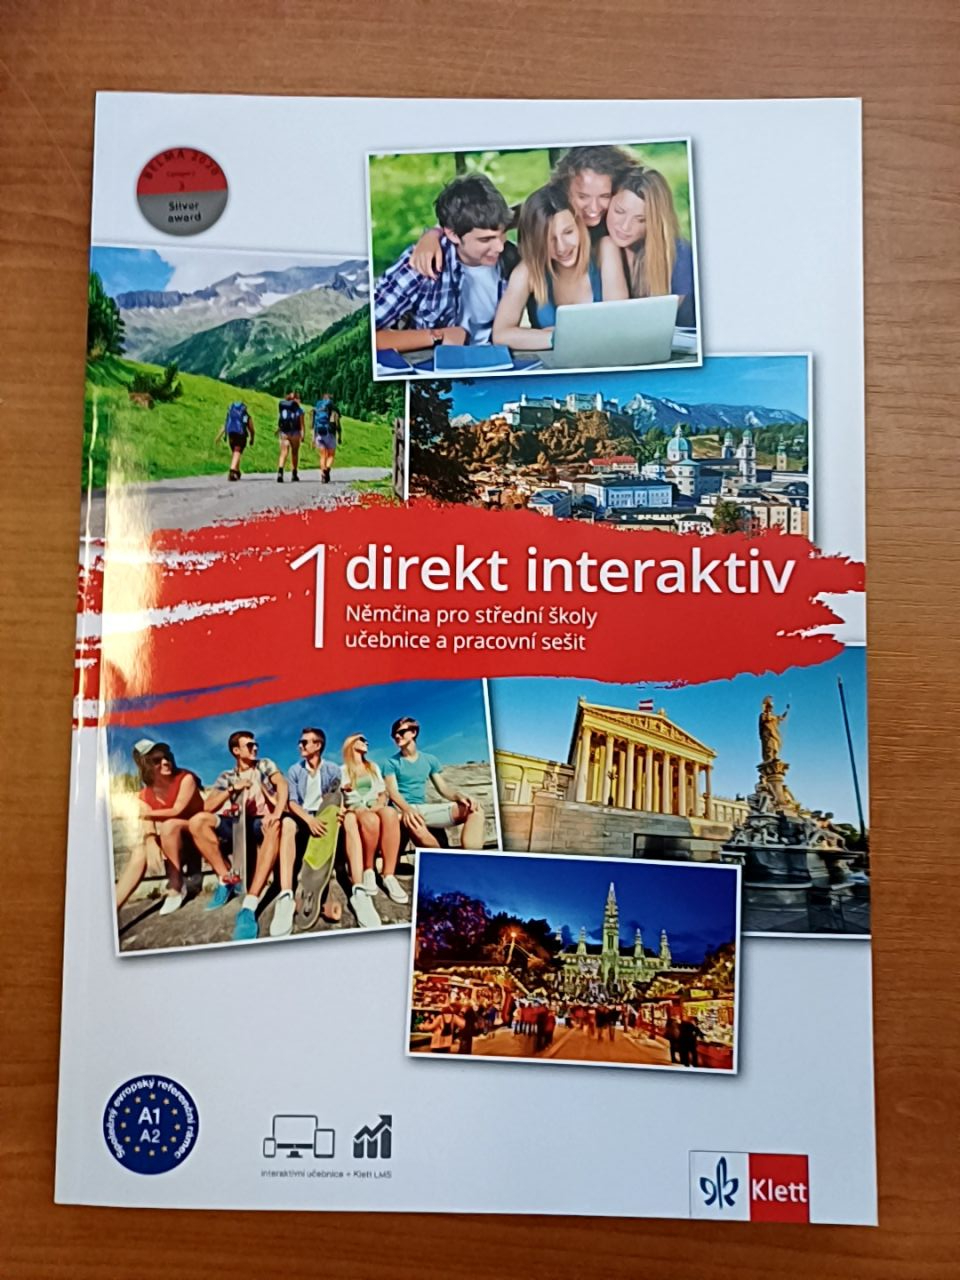 Direkt interaktiv 1 (A1-A2) - Němčina pro střední školy Klett